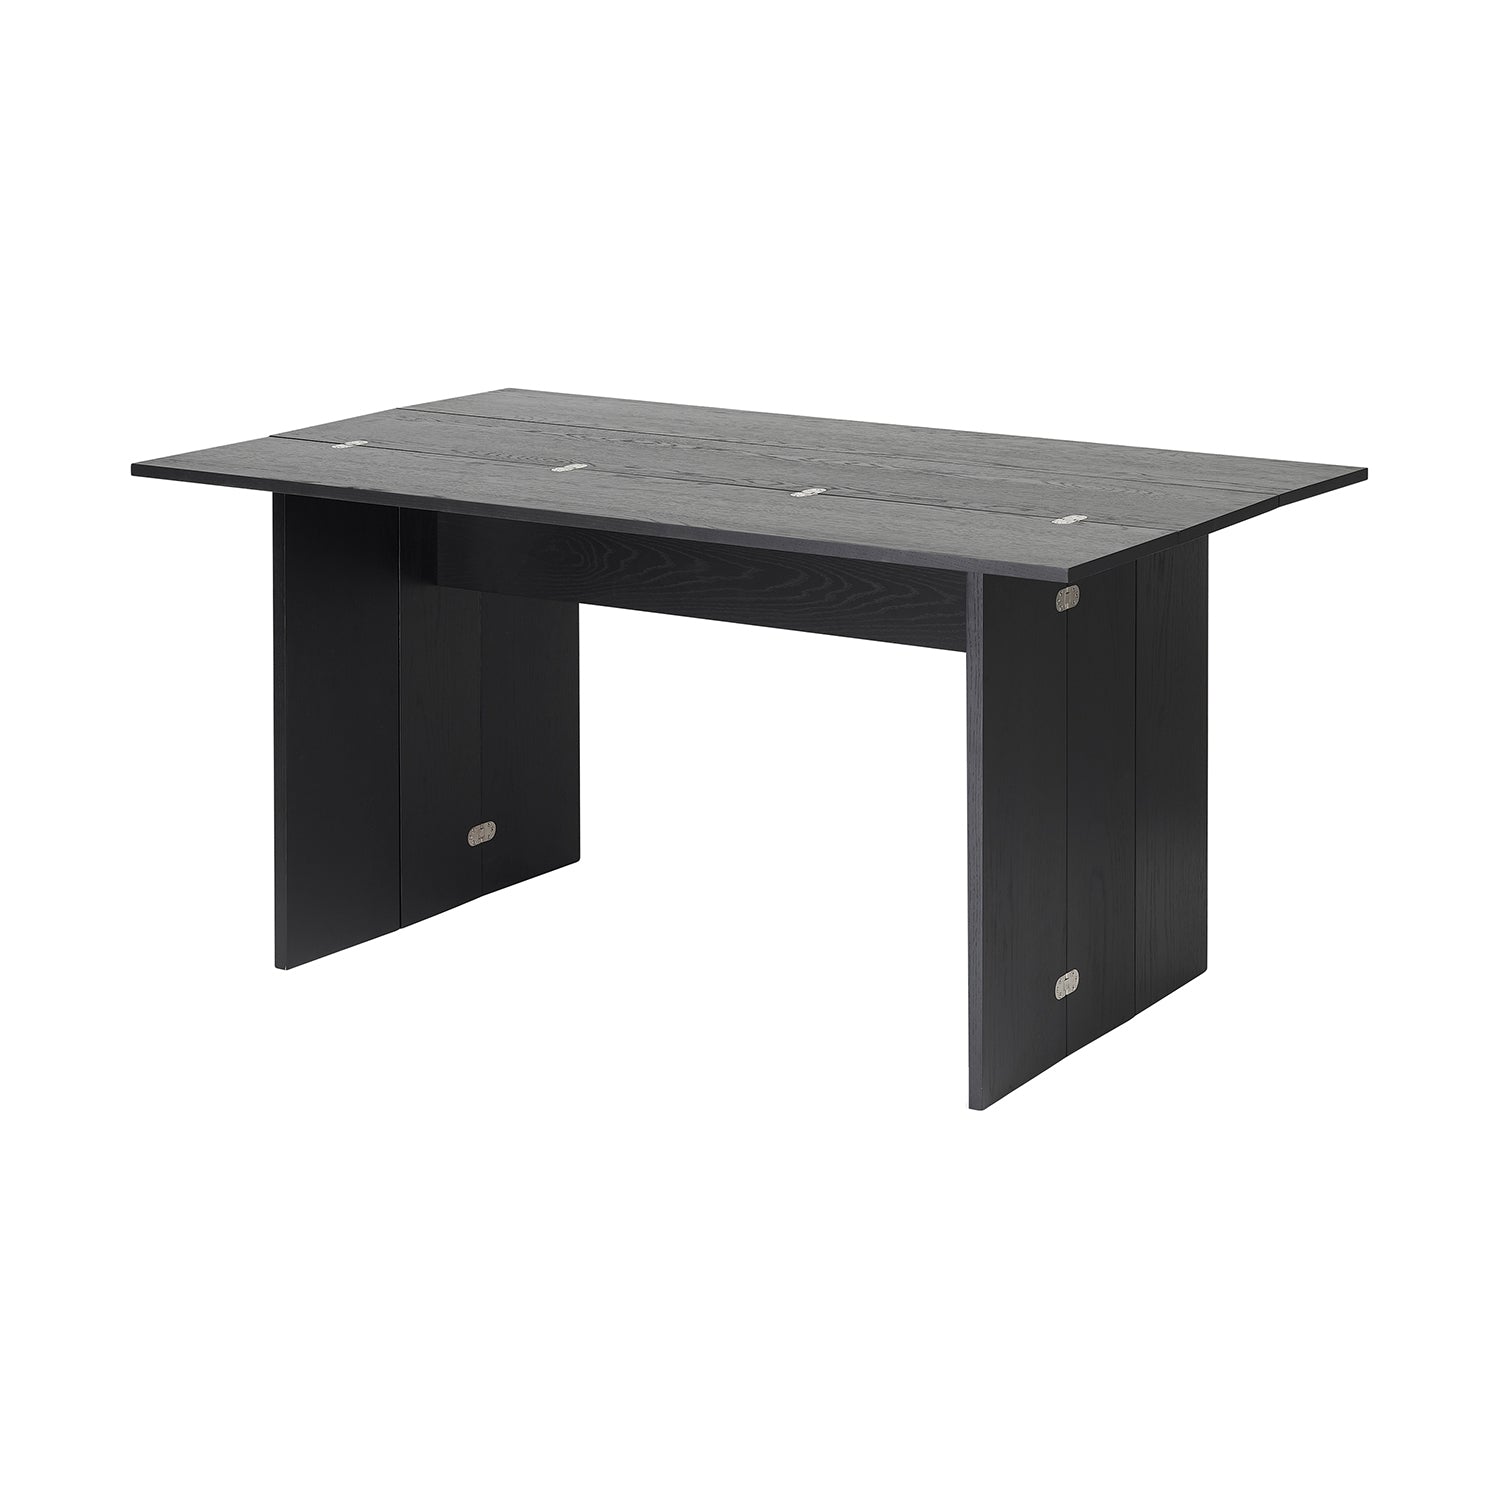 Flip Table - The Design Choice